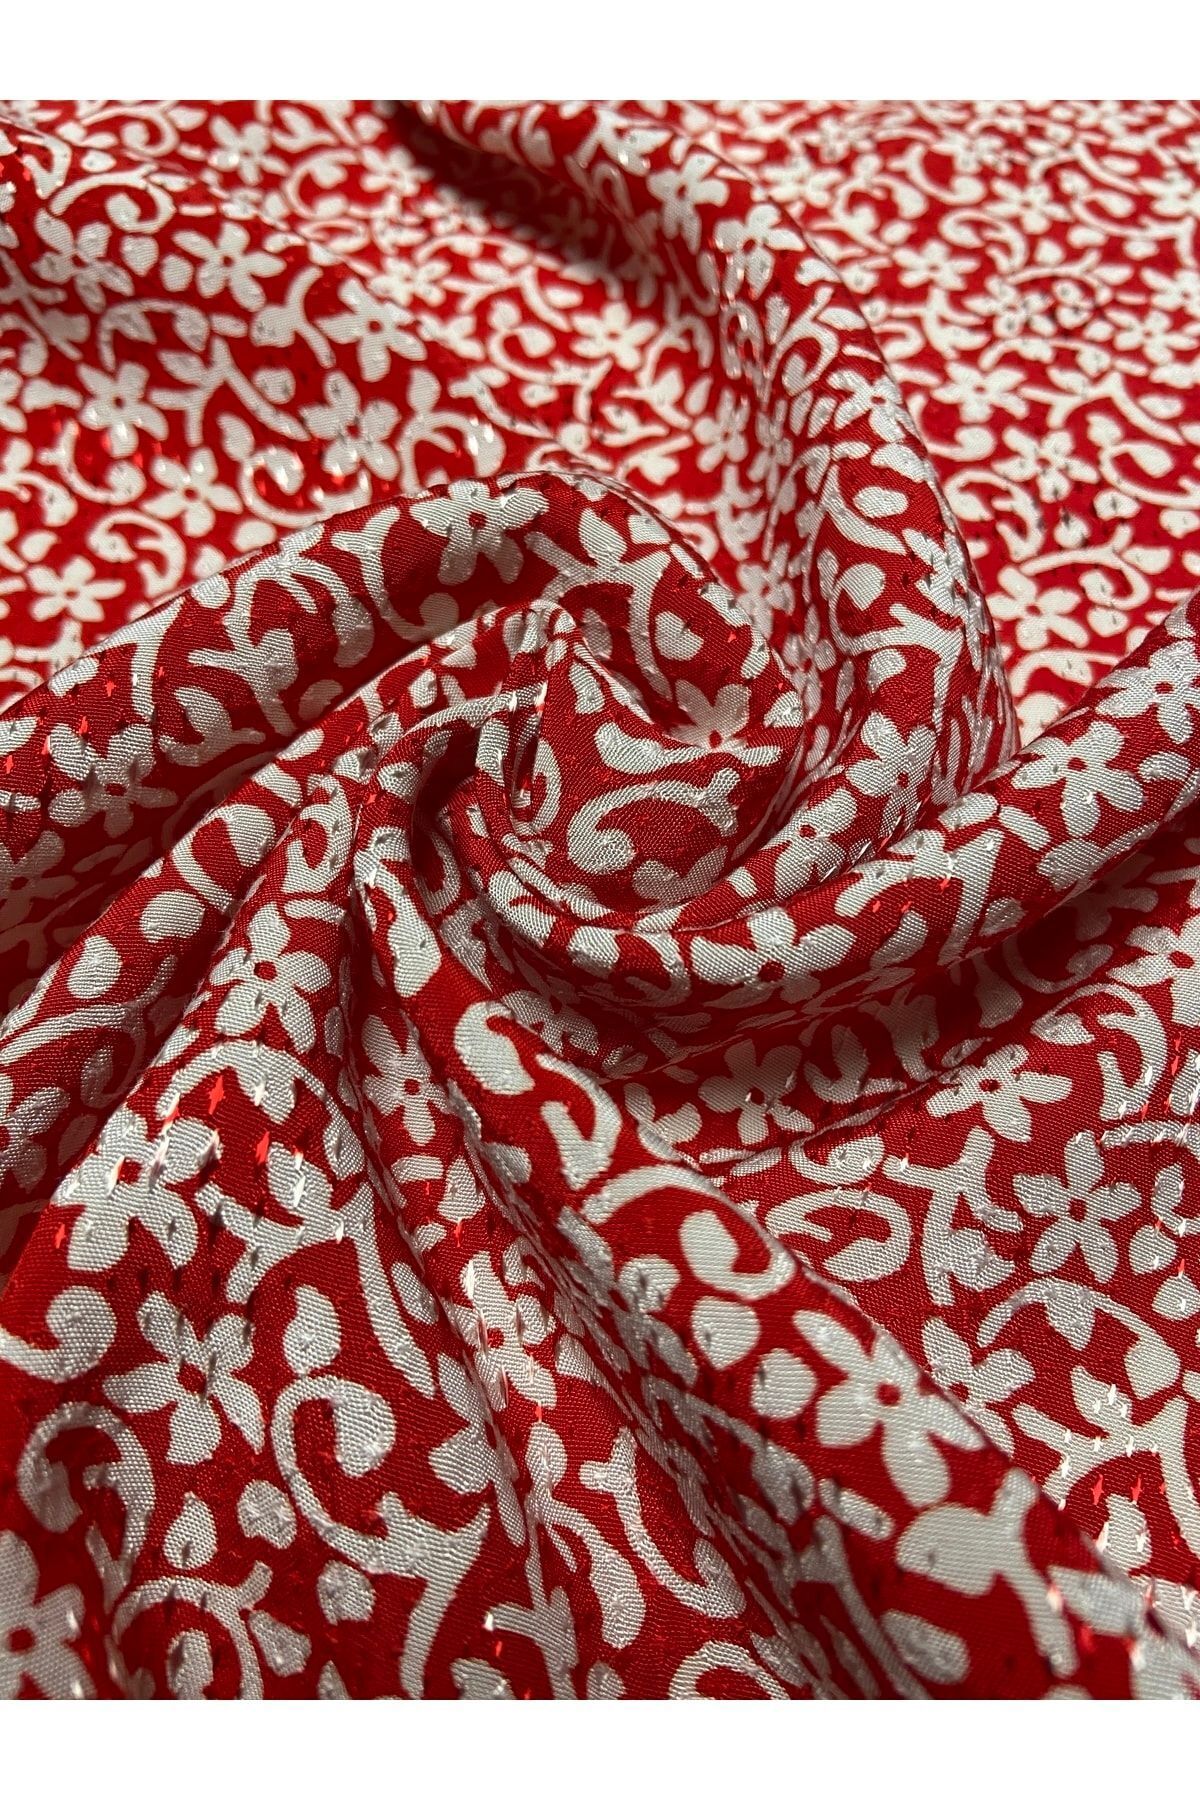 Kumaş sever Kırmızı Çiçek Desenli Jakarlı Cupra Kumaş 1.sınıf Metrelik Çift En Giyim Etek Elbise Giyim